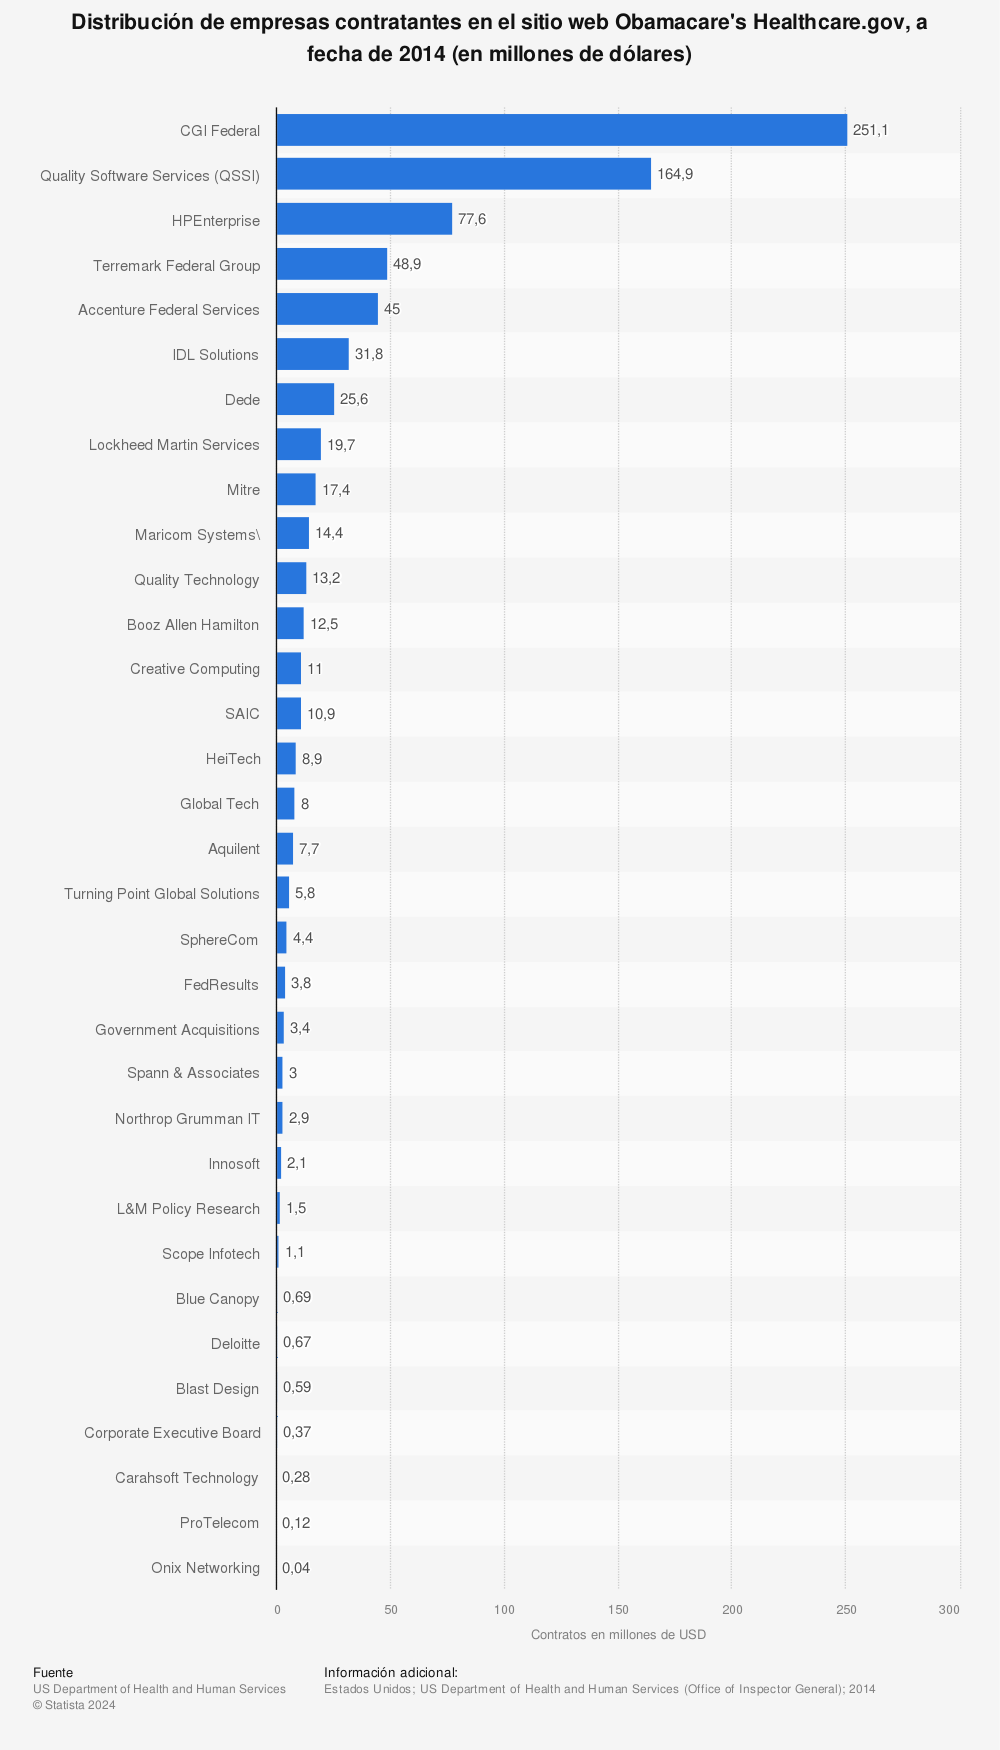 Estadística: Distribución de empresas contratantes en el sitio web Obamacare's Healthcare.gov, a fecha de 2014 (en millones de dólares) | Statista